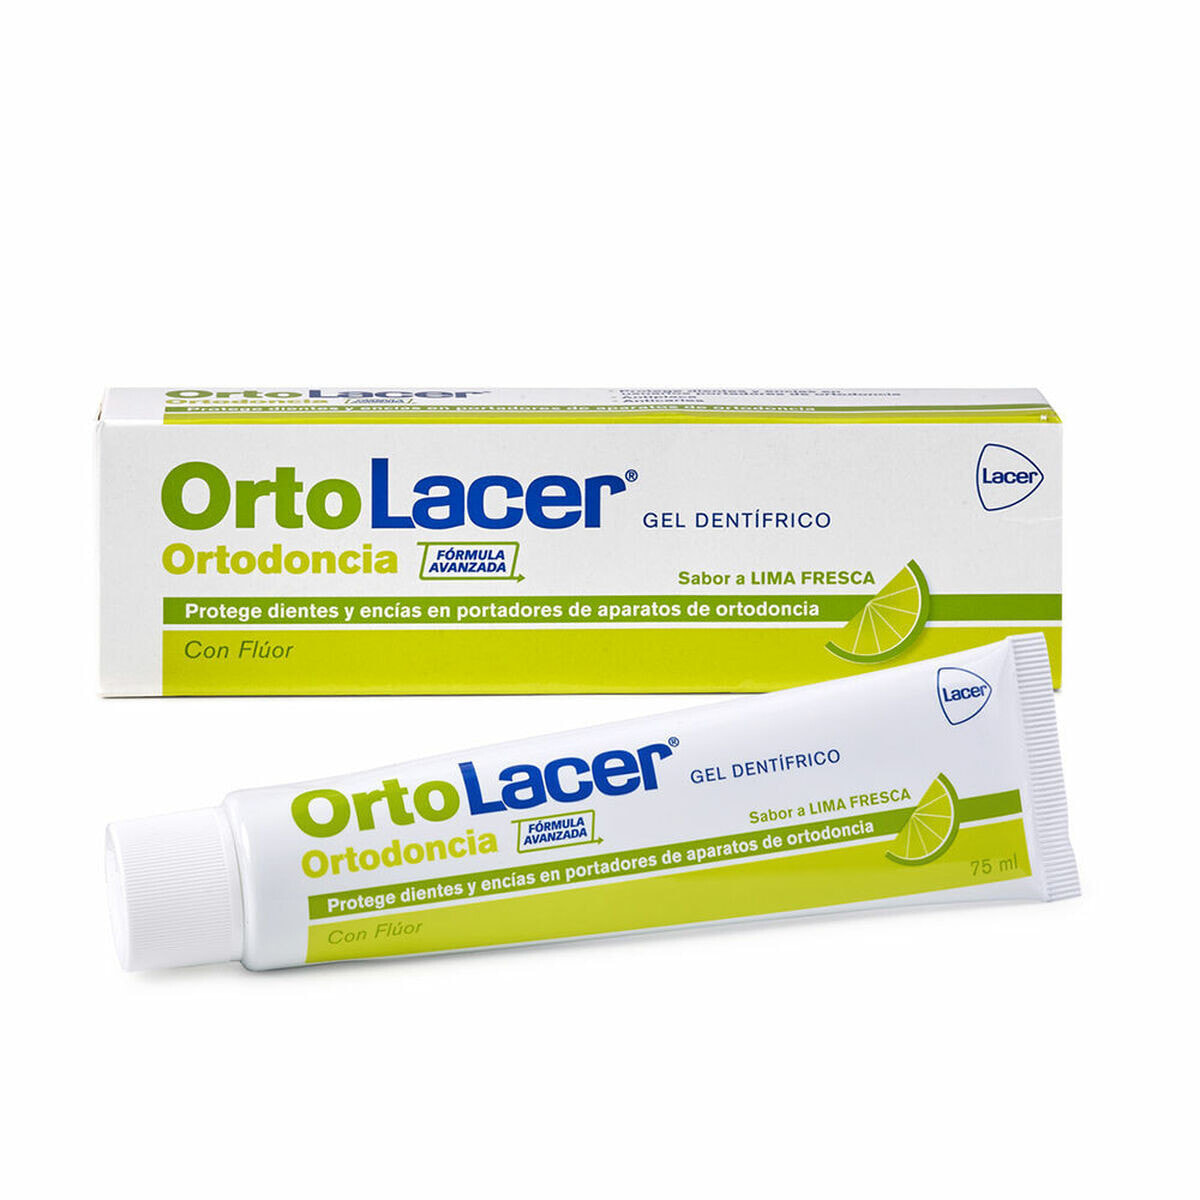 Зубная паста Lacer Ortodoncia лимонный (75 ml)